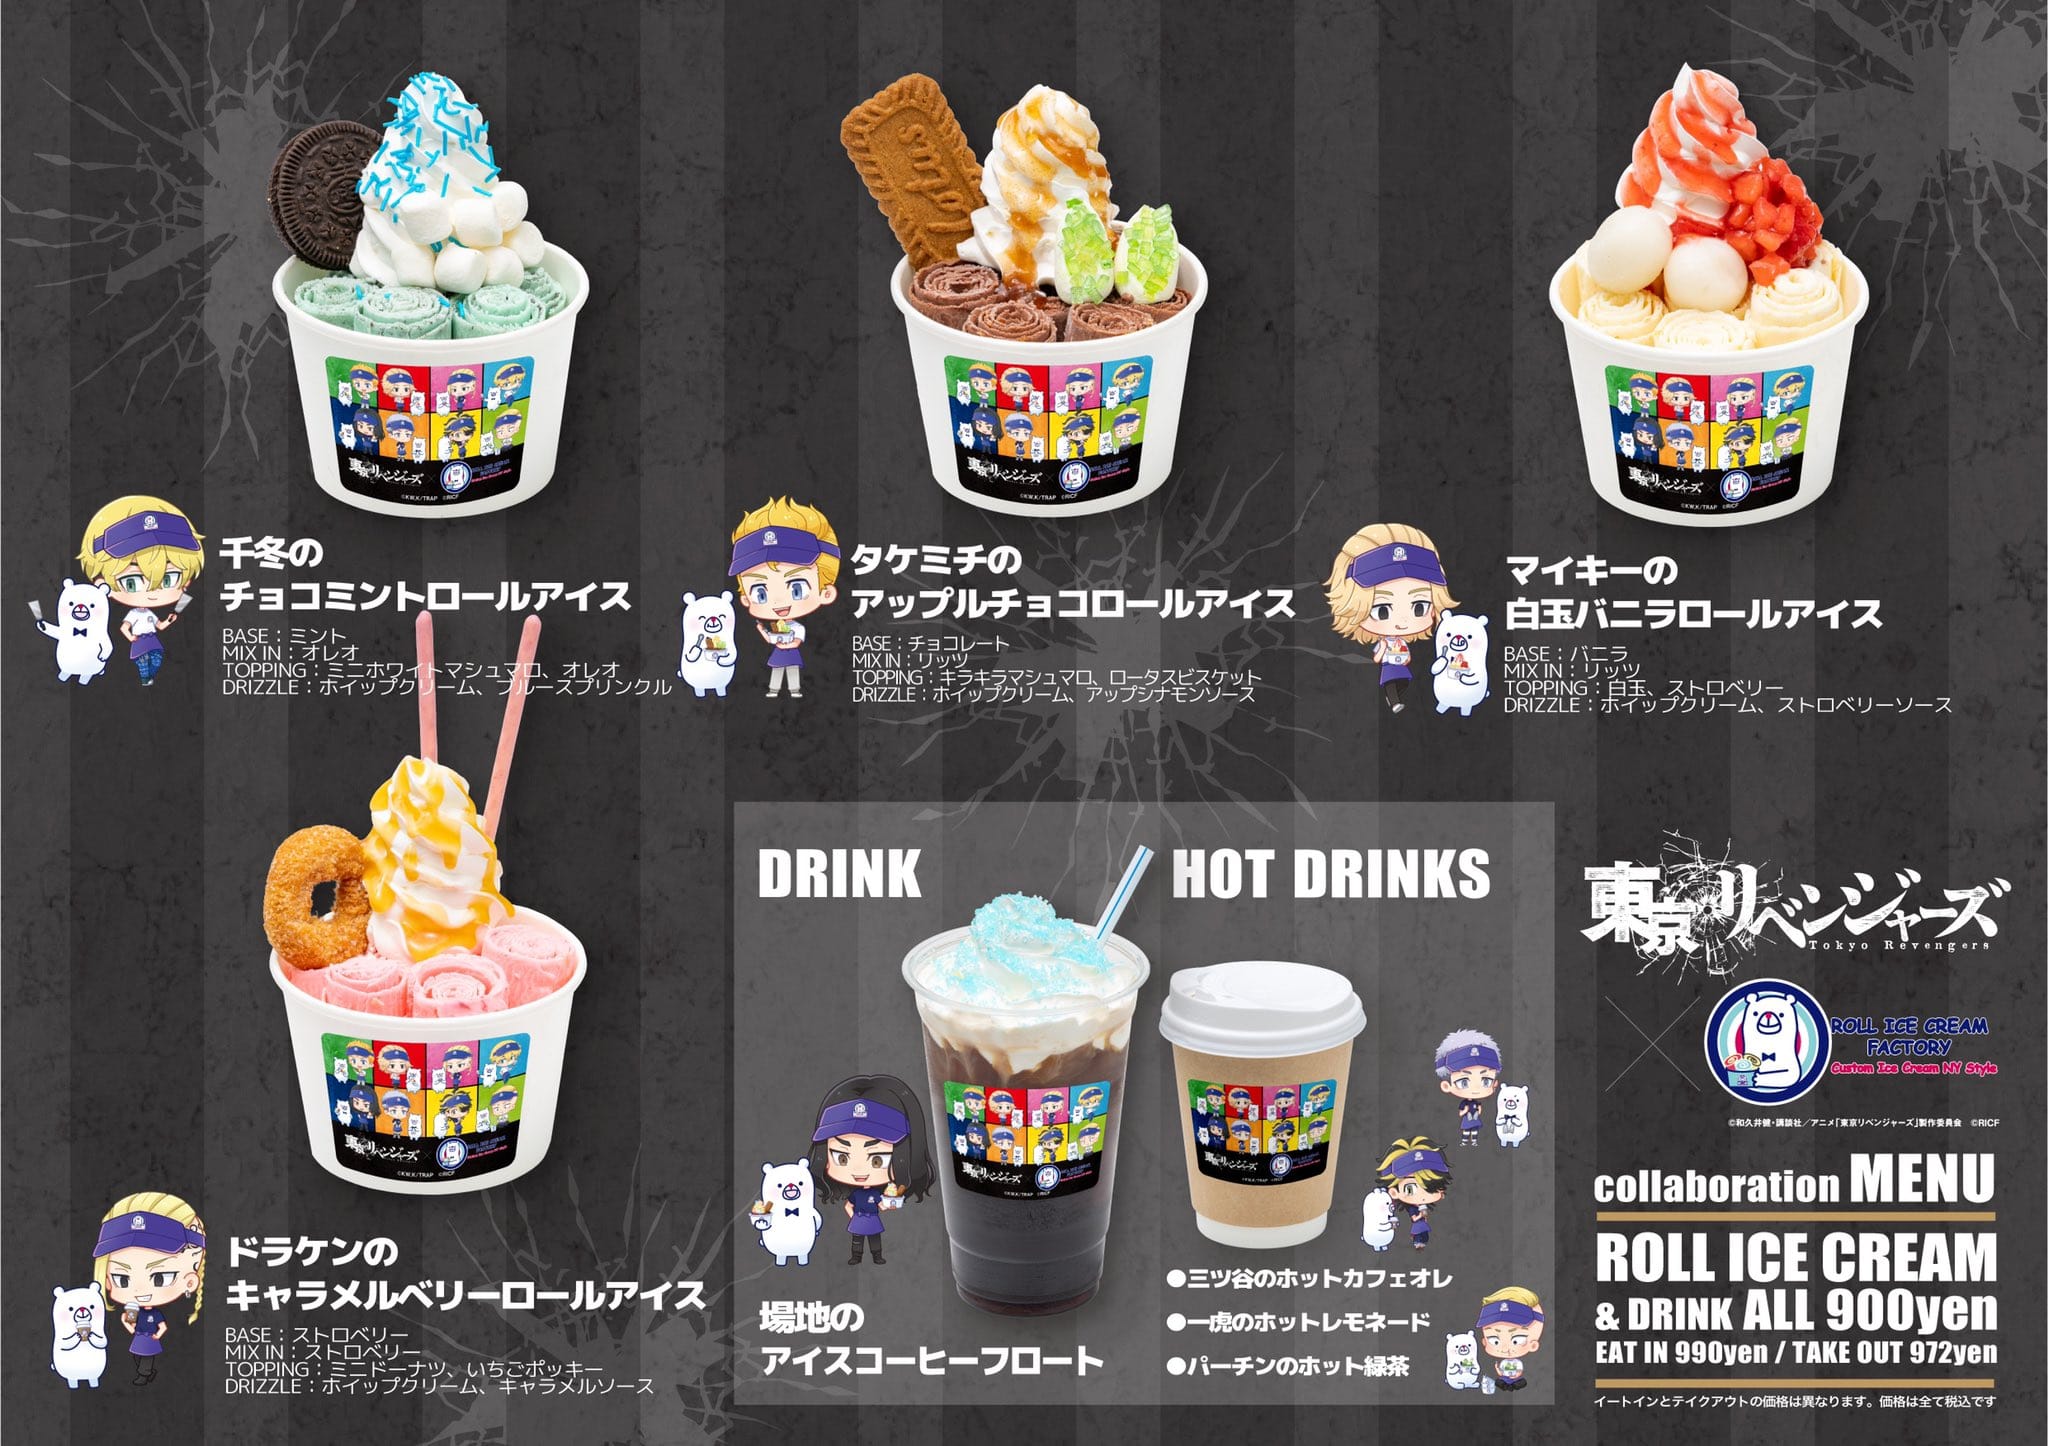 東リベ × ロールアイスクリーム8店舗 1月25日よりコラボ開催!